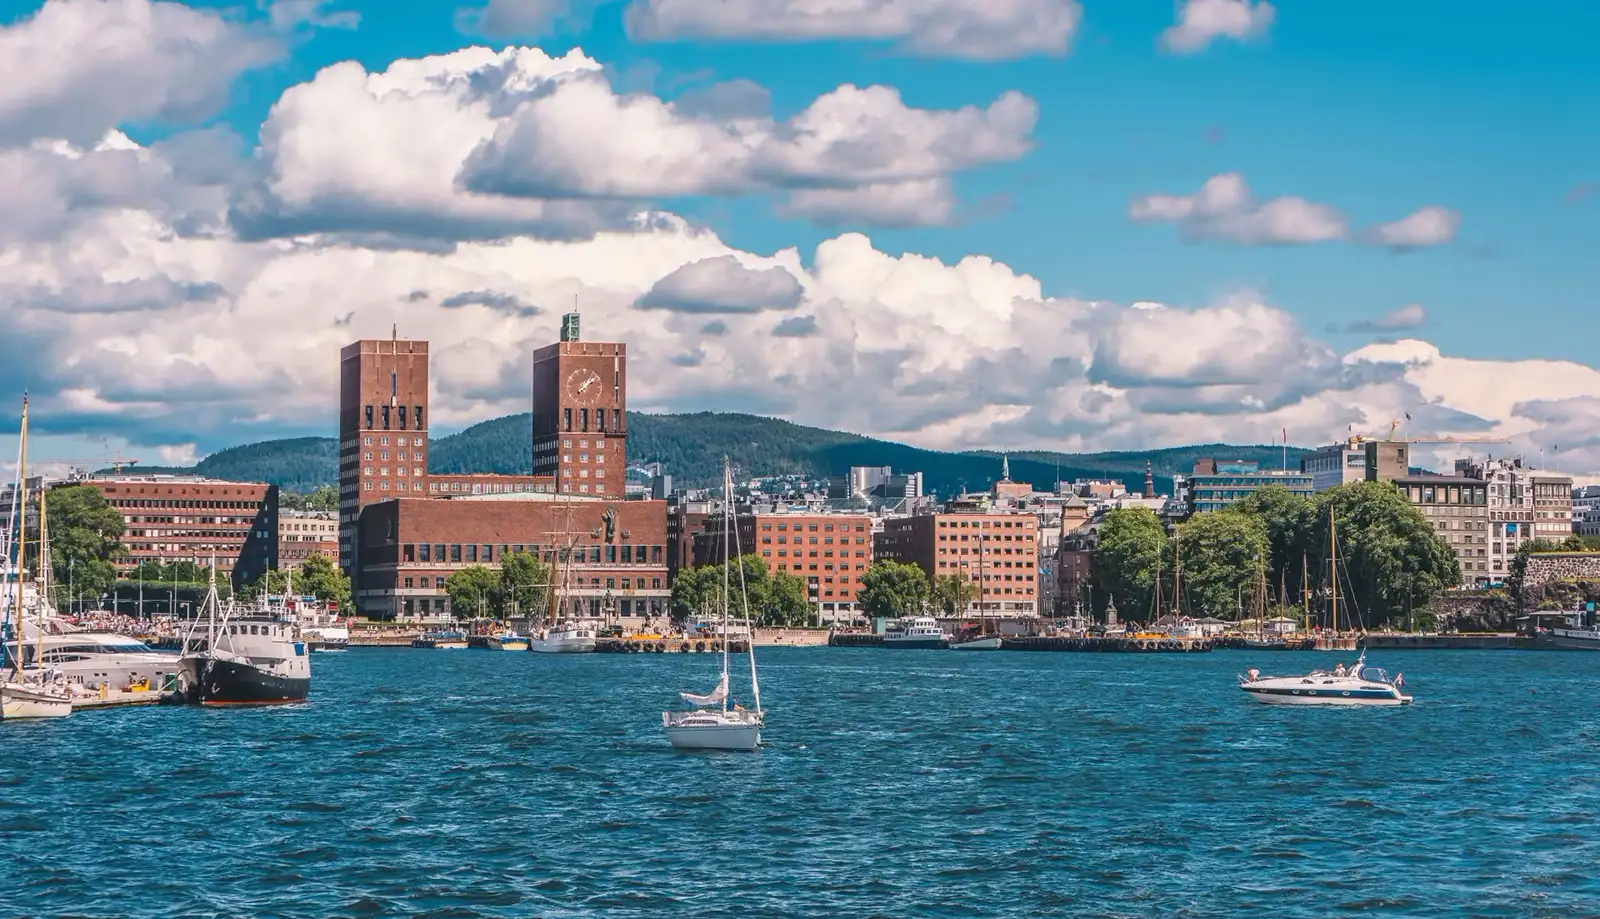 Du lịch Oslo - Thành phố từng dưới quyền cai trị của vua Đan Mạch